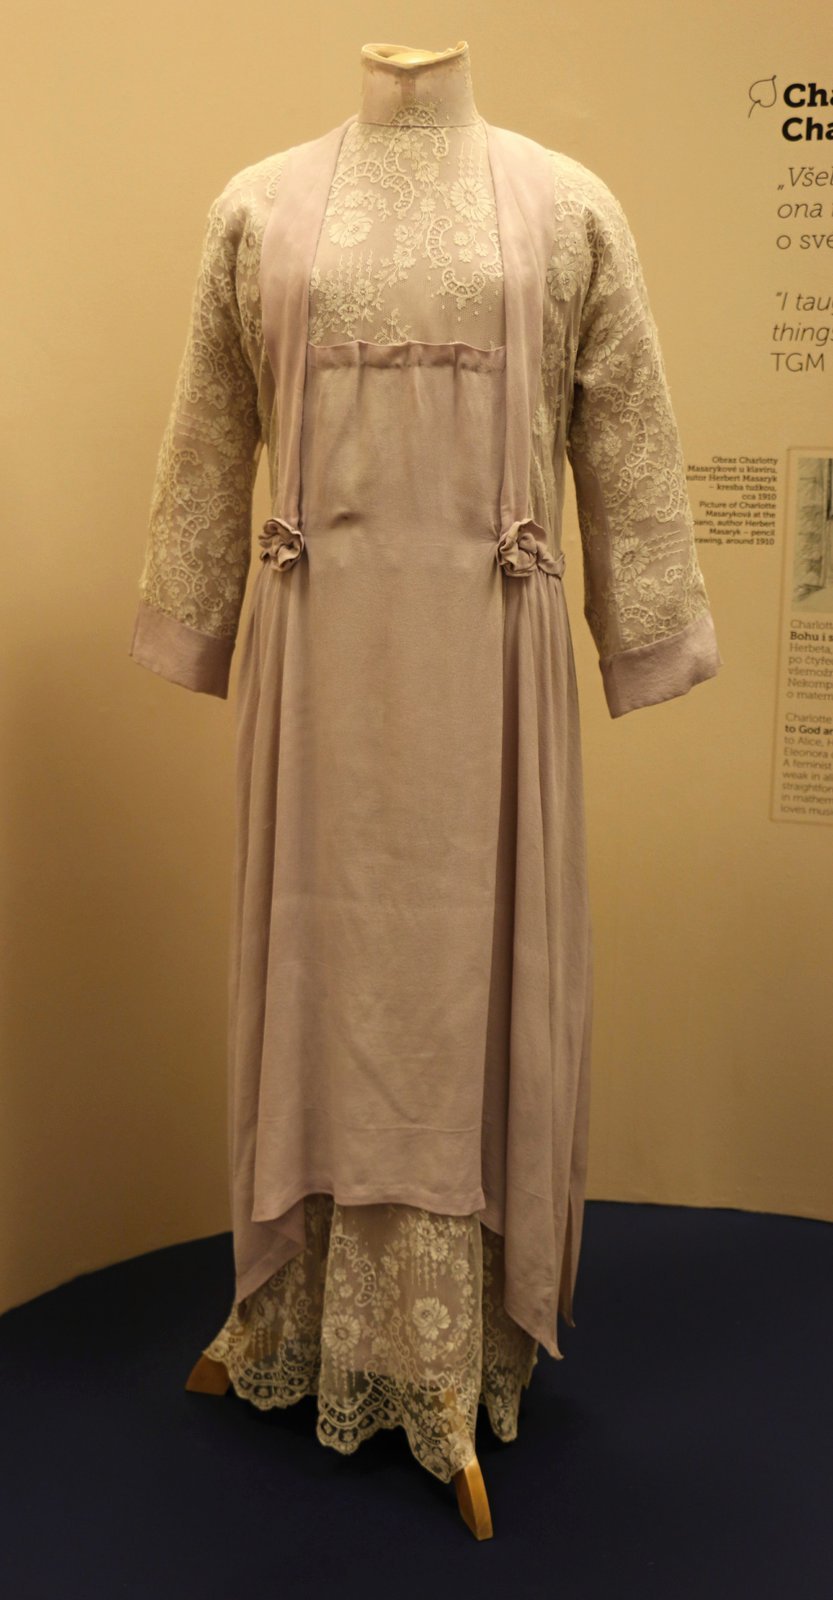 Společenské šaty Charlotty G. Masarykové kombinují prvky poválečné i předválečné módy.